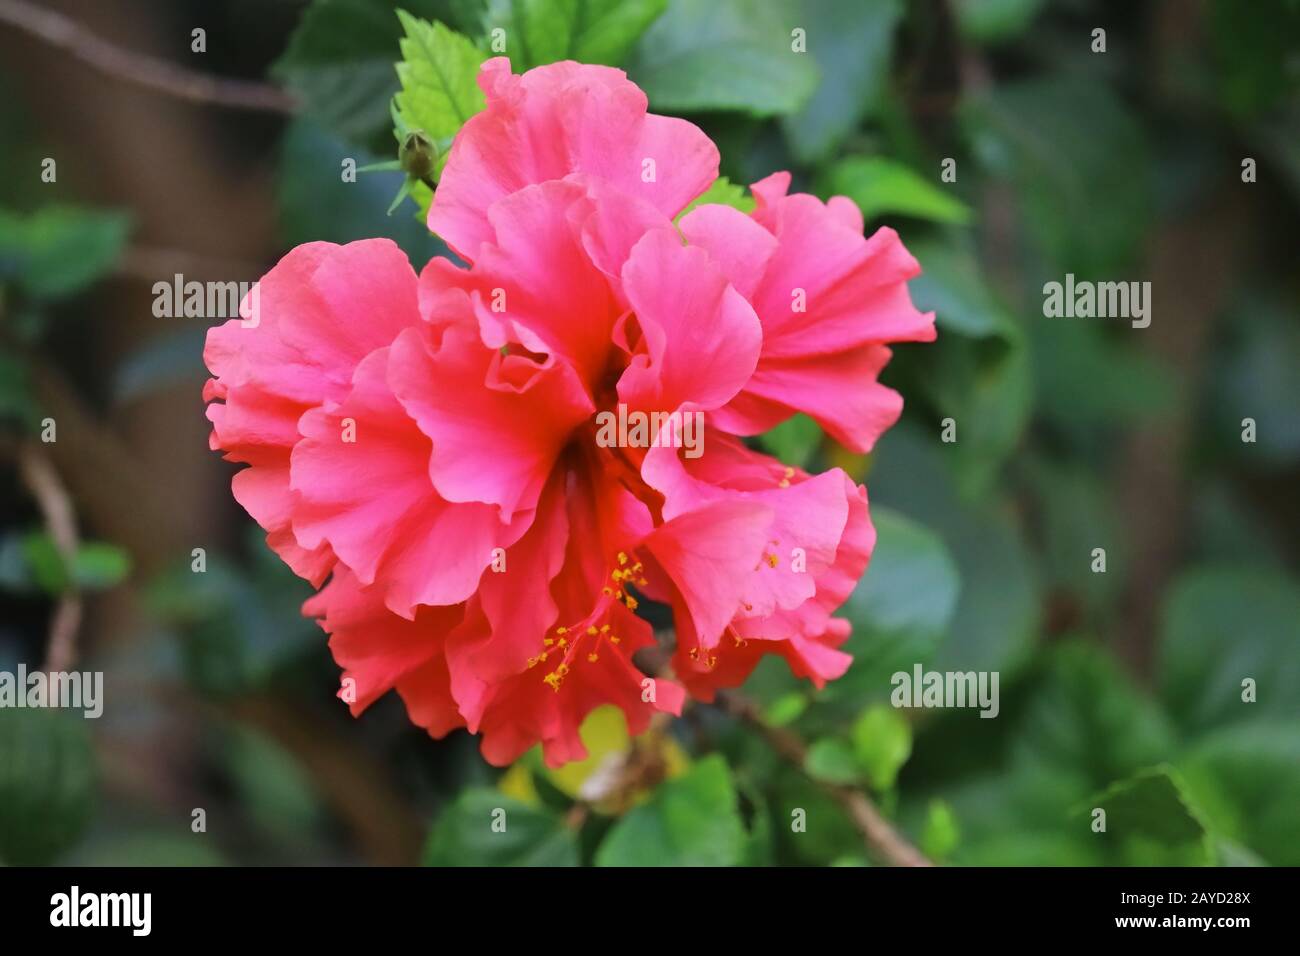 primo piano di rosso ibisco fiore pieno fiore in primavera giardino, concetto per la primavera, ibiscus fiore sfondo, Foto Stock